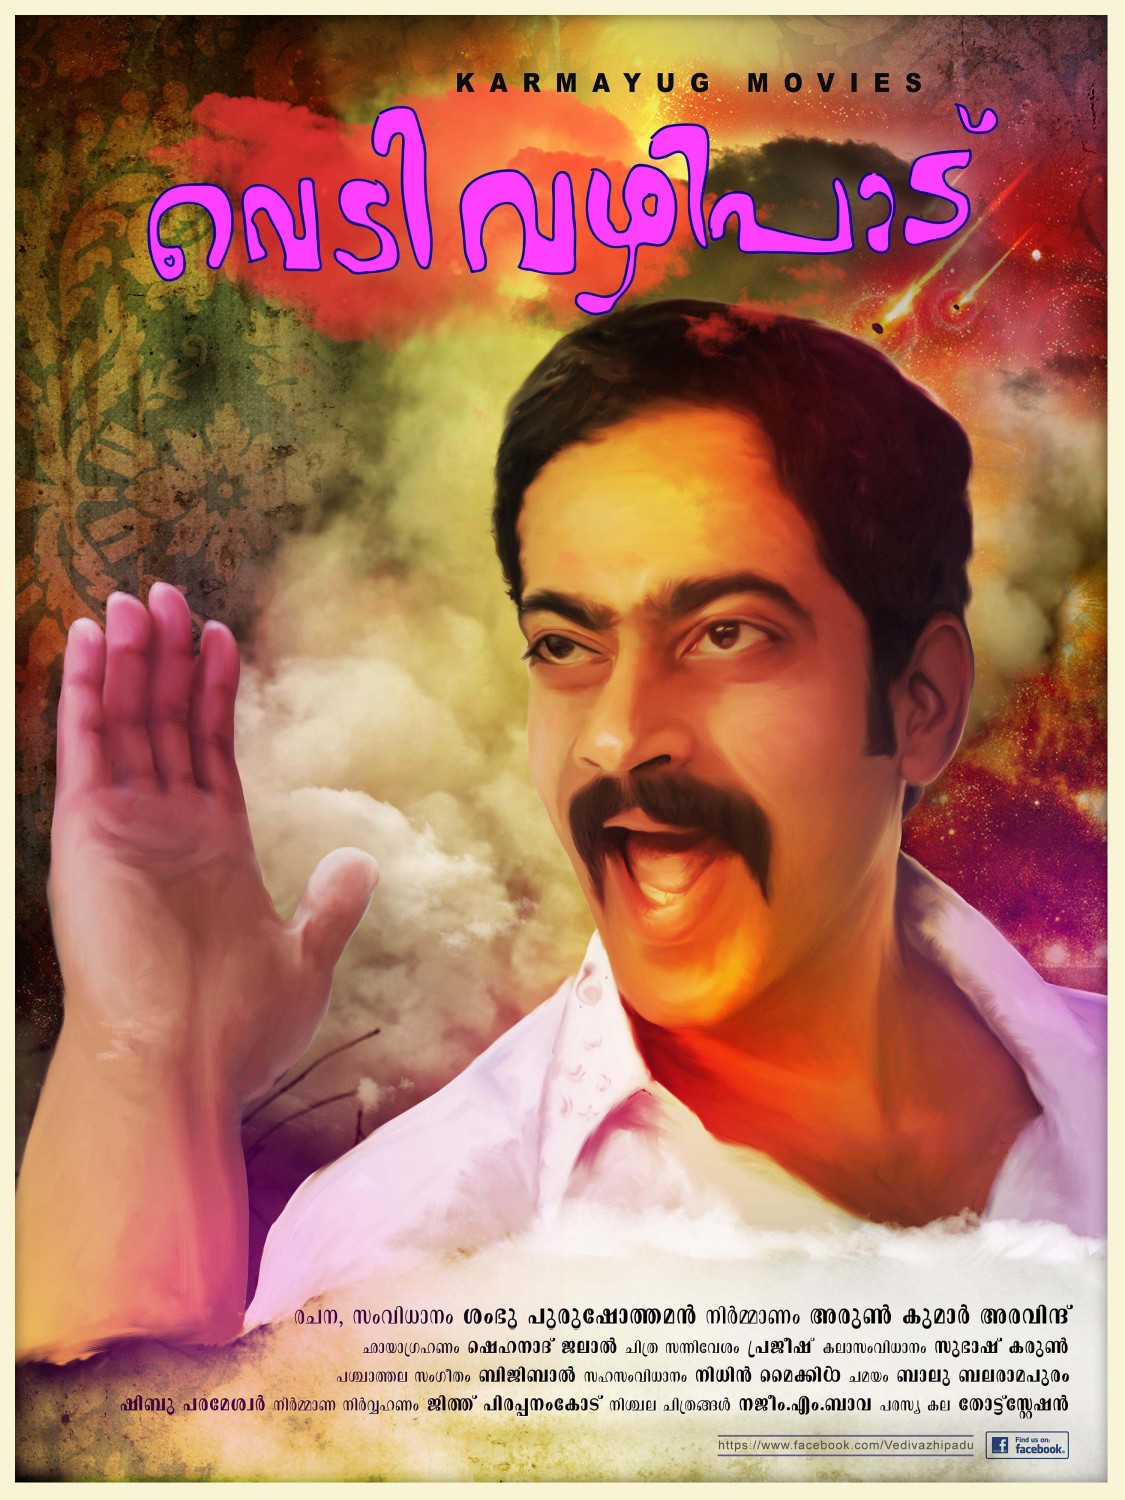 Extra Large Movie Poster Image for Vedivazhipadu (#10 of 13)